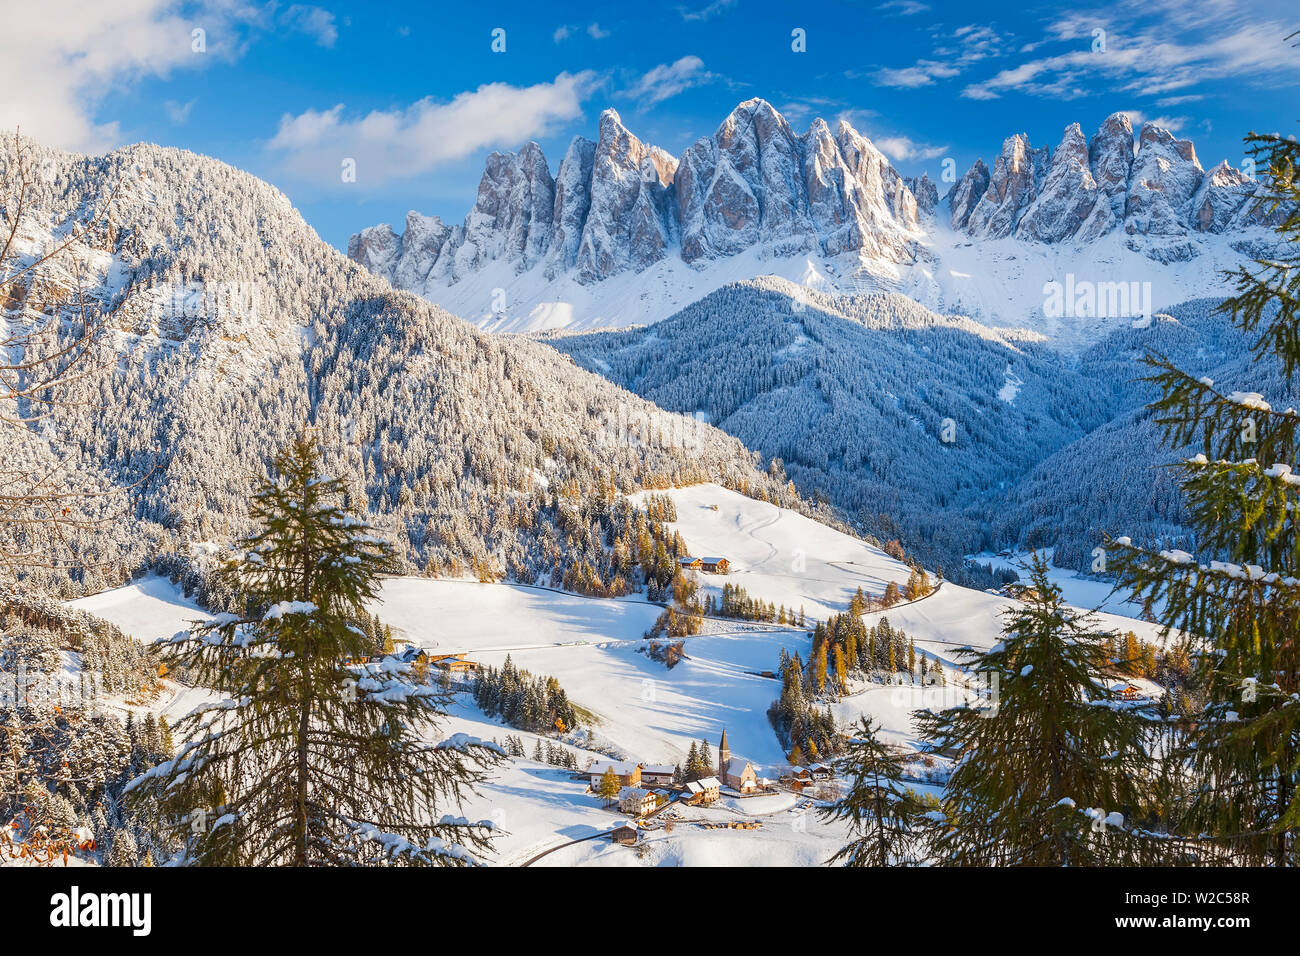 Winter snow; St. Magdalena village; Geisler Spitzen (3060m); Val di Funes; Dolomites mountains; Trentino-Alto Adige; South Tirol; Italy Stock Photo